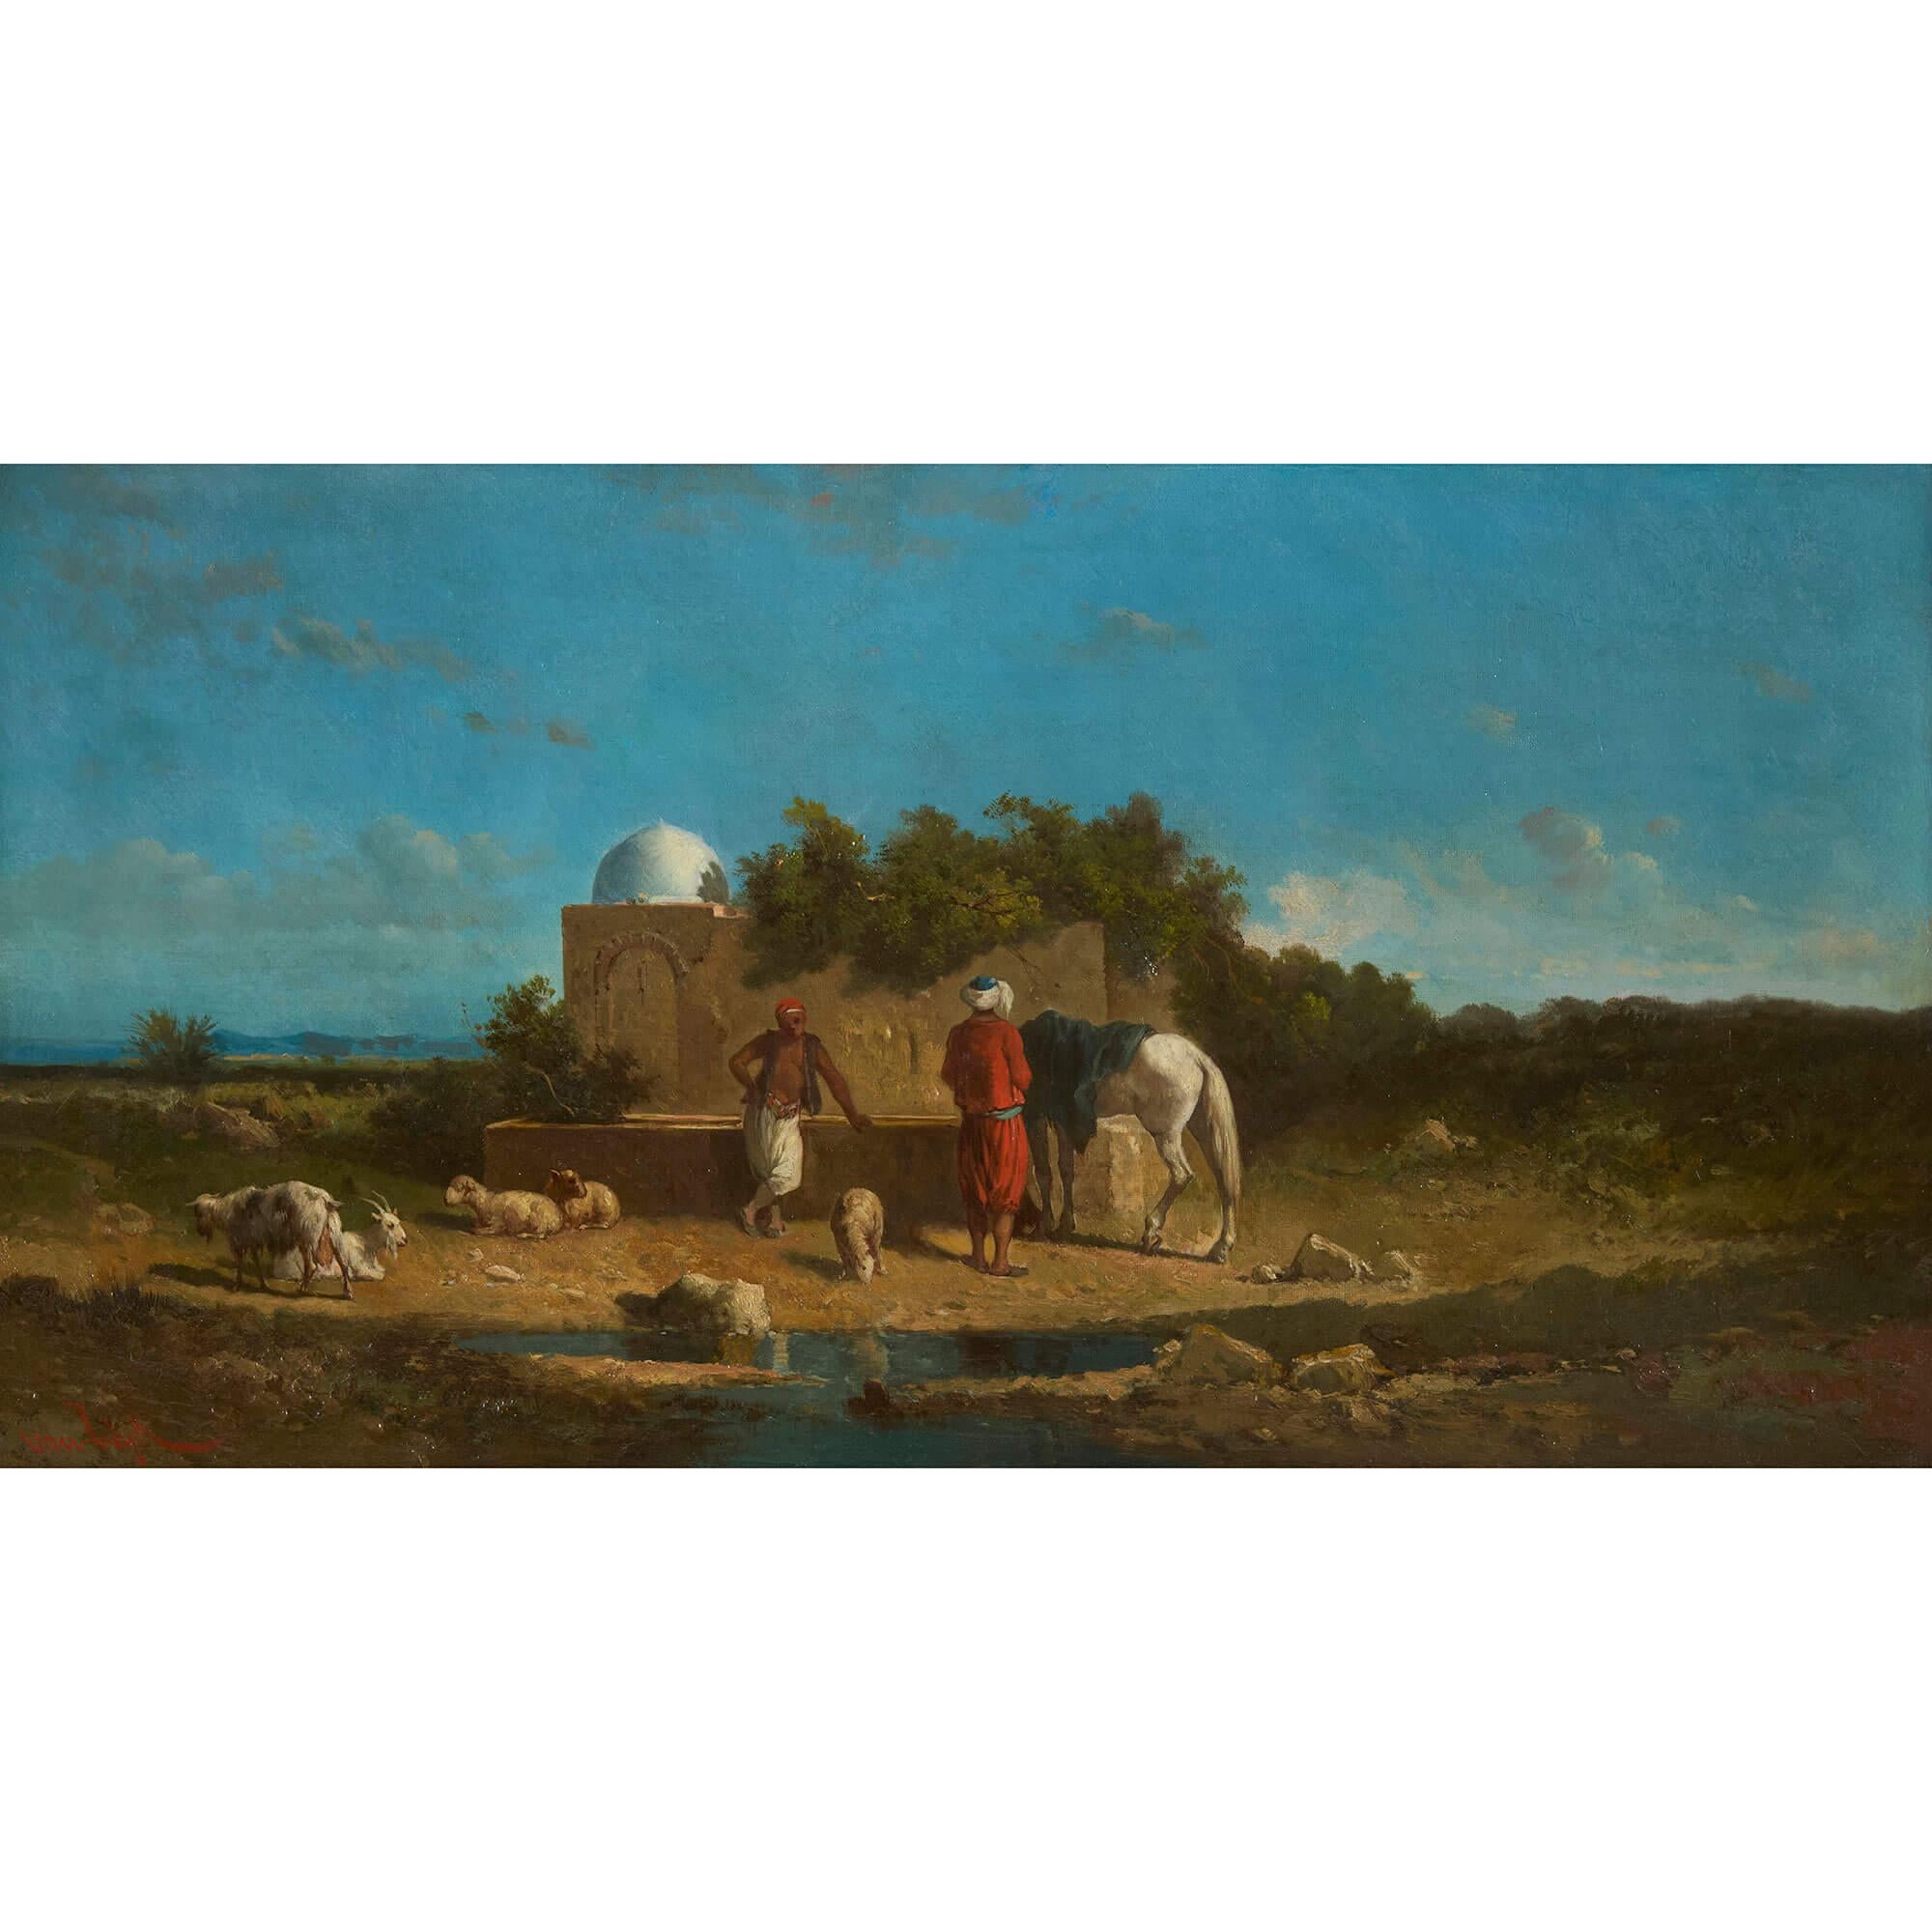 Set of four Orientalist landscape paintings by van Wijk 
Dutch, 1879 
Canvas: Height 35cm, width 65cm
Largest frame: Height 41cm, width 71cm, depth 4cm
Smallest frame: Height 39.5cm, width 69.5cm, depth 4cm

This set of four Orientalist landscape